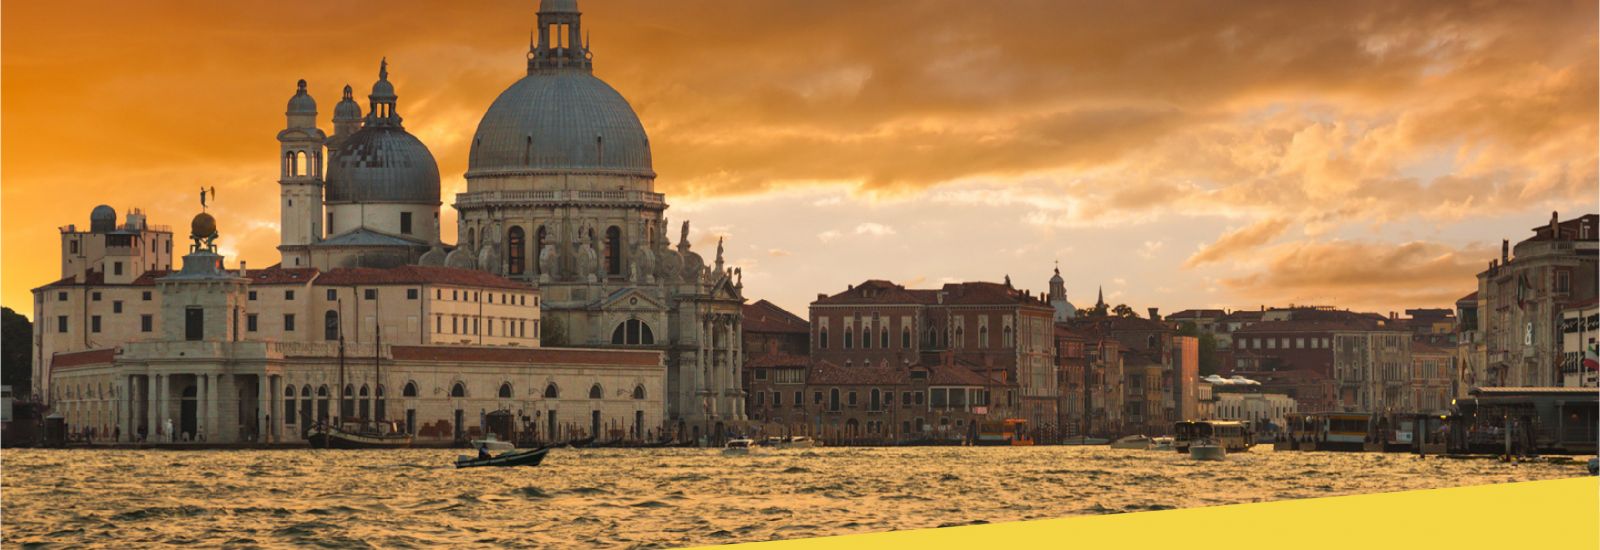 The Grand Canal and Basilica Santa Maria della Salute in Venice, Italy.